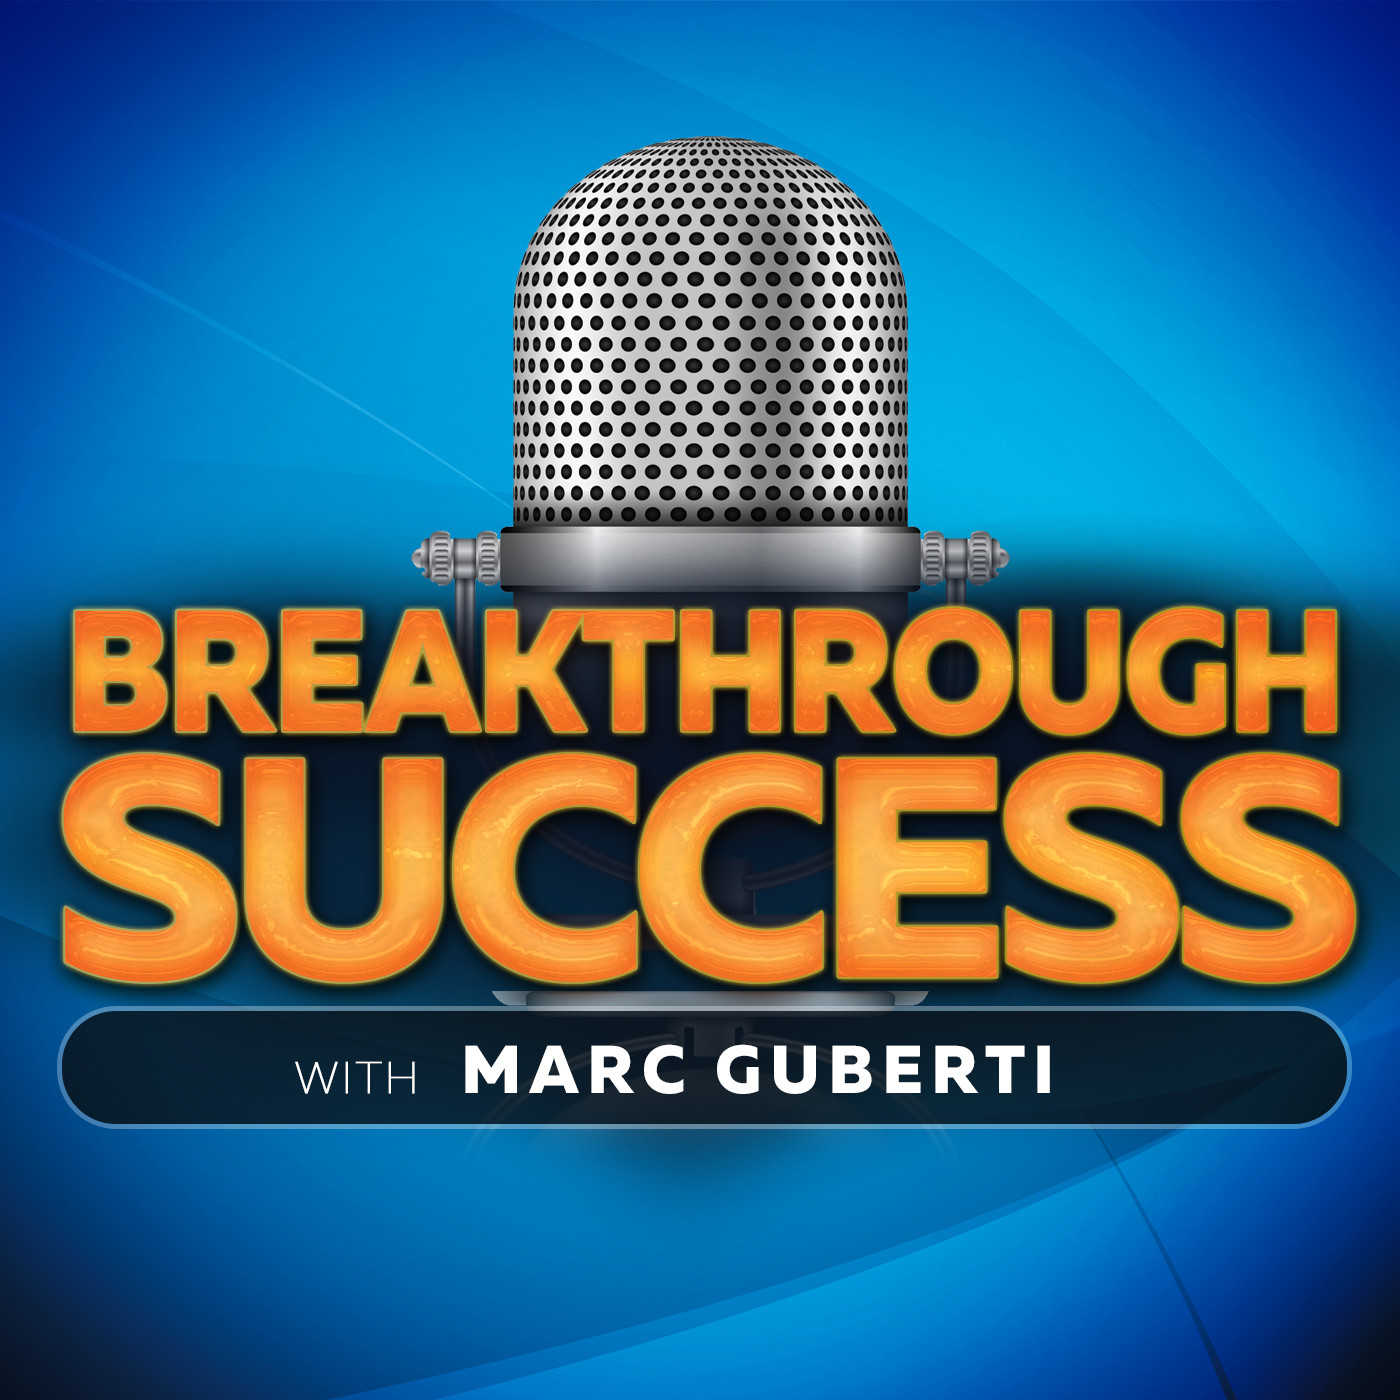 Break through success